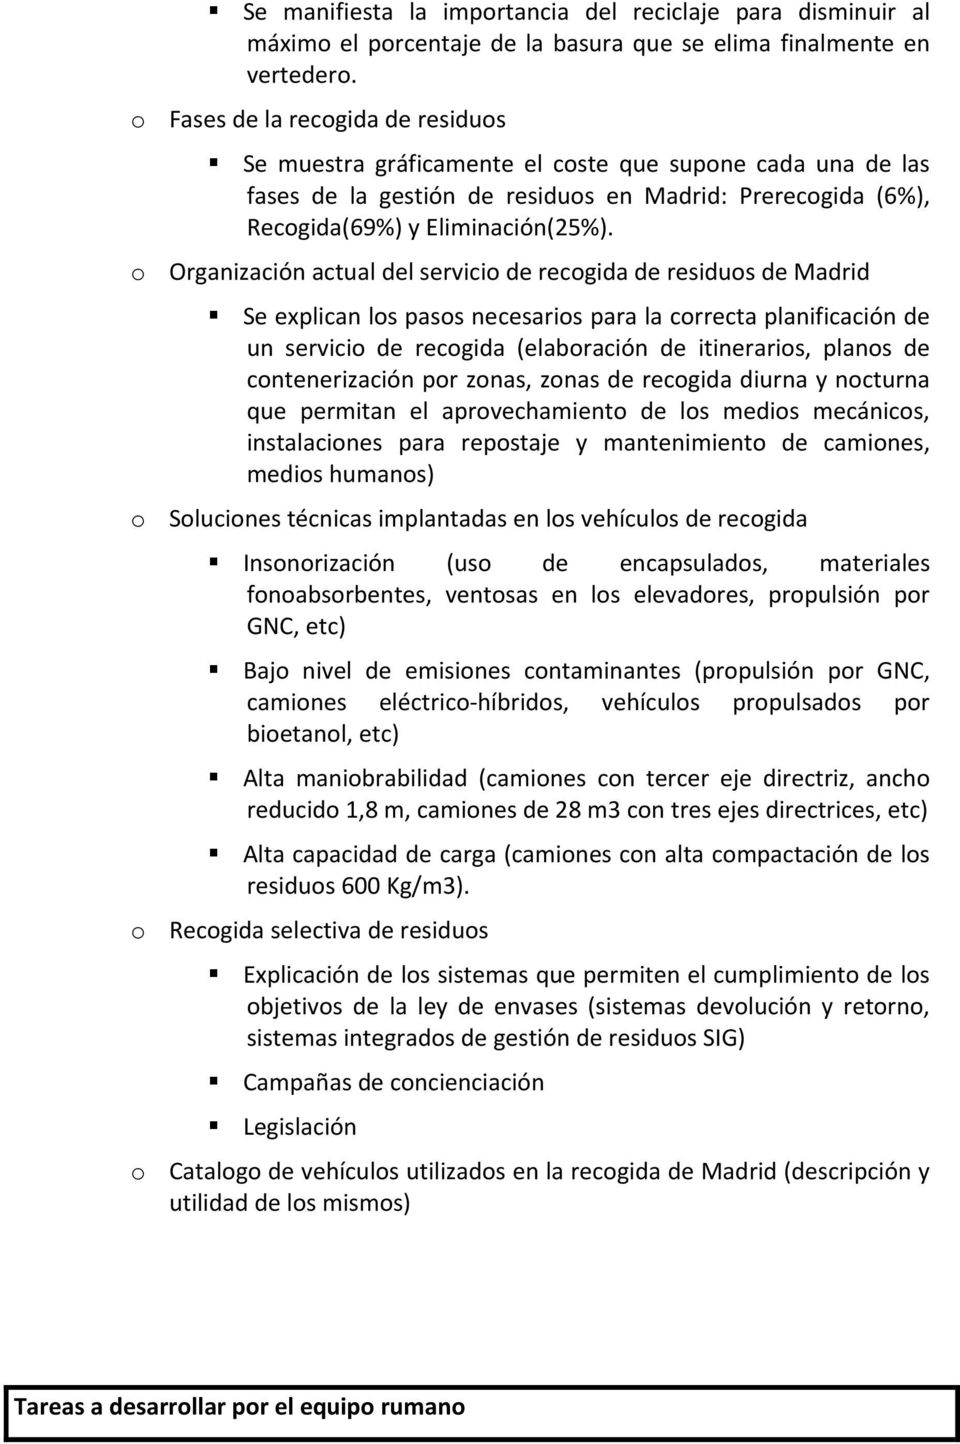 o Organización actual del servicio de recogida de residuos de Madrid Se explican los pasos necesarios para la correcta planificación de un servicio de recogida (elaboración de itinerarios, planos de